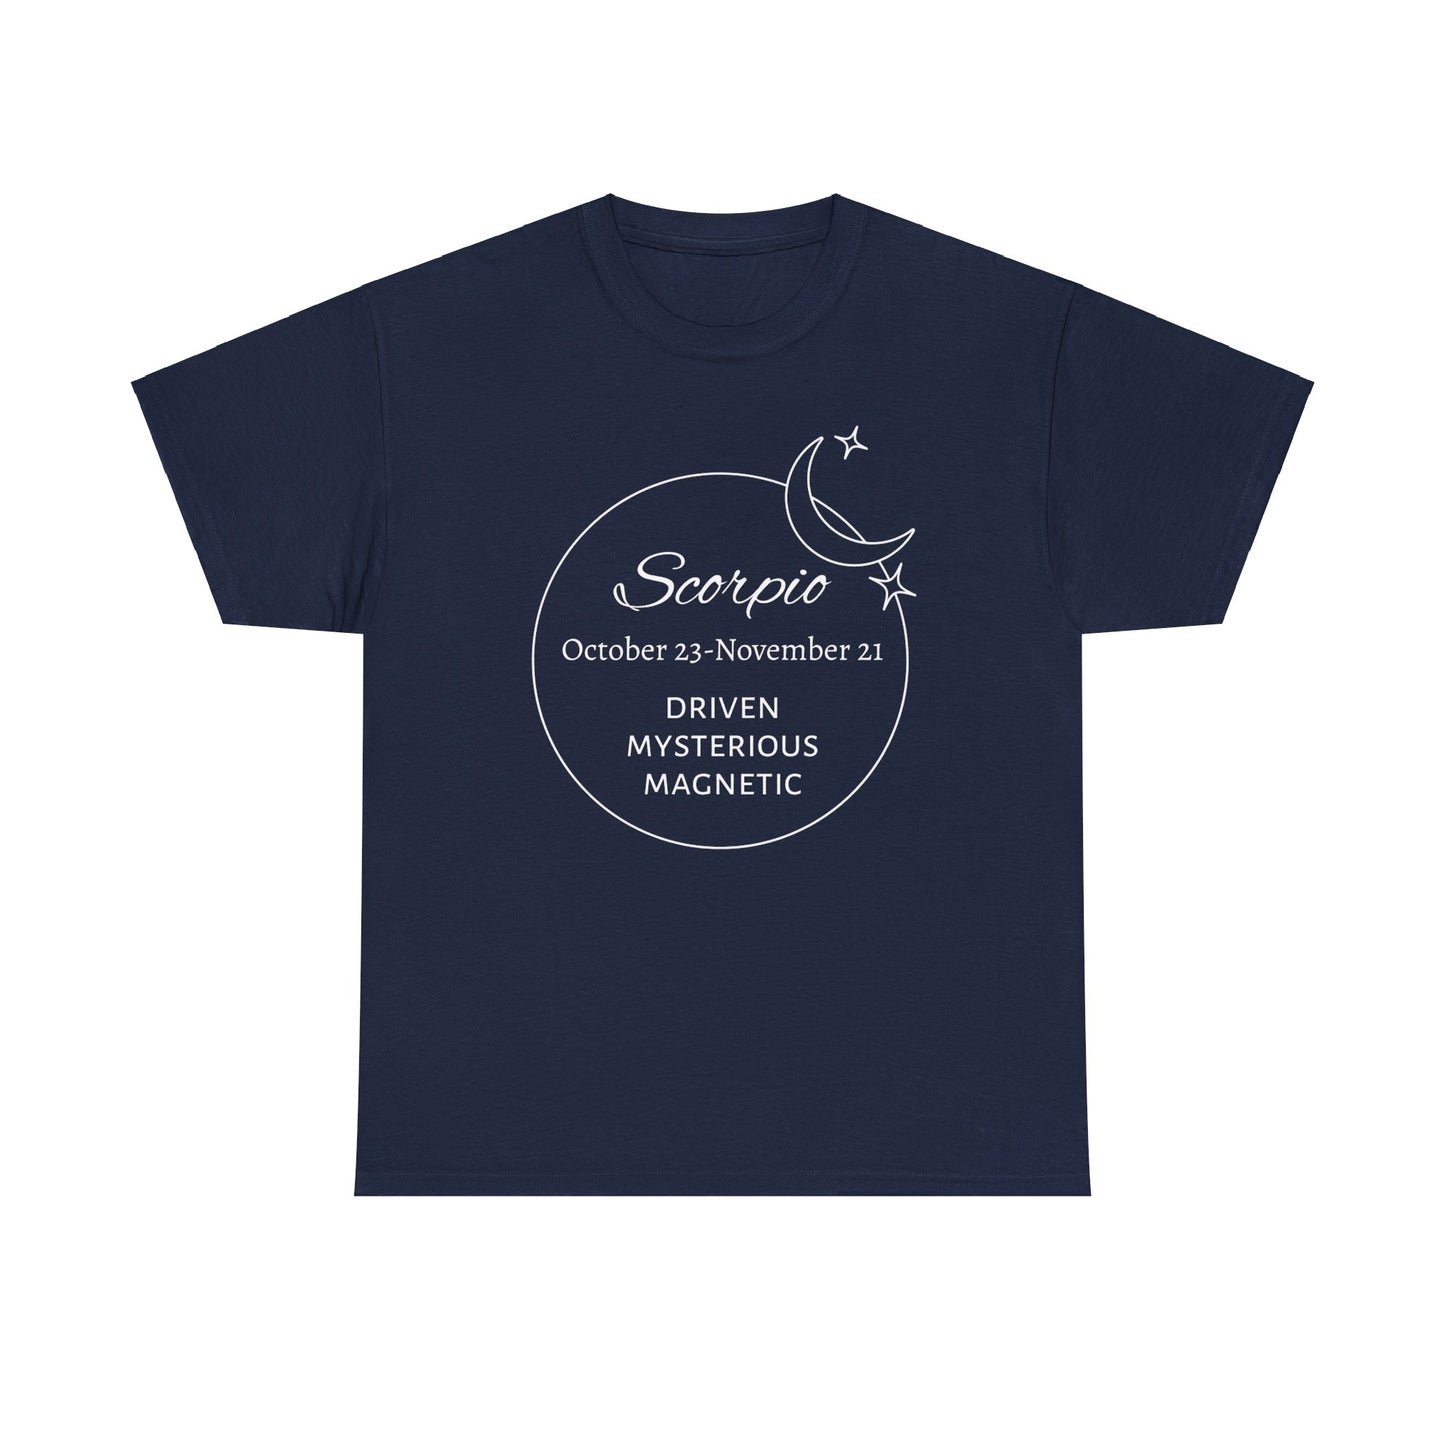 Scorpio traits t-shirt